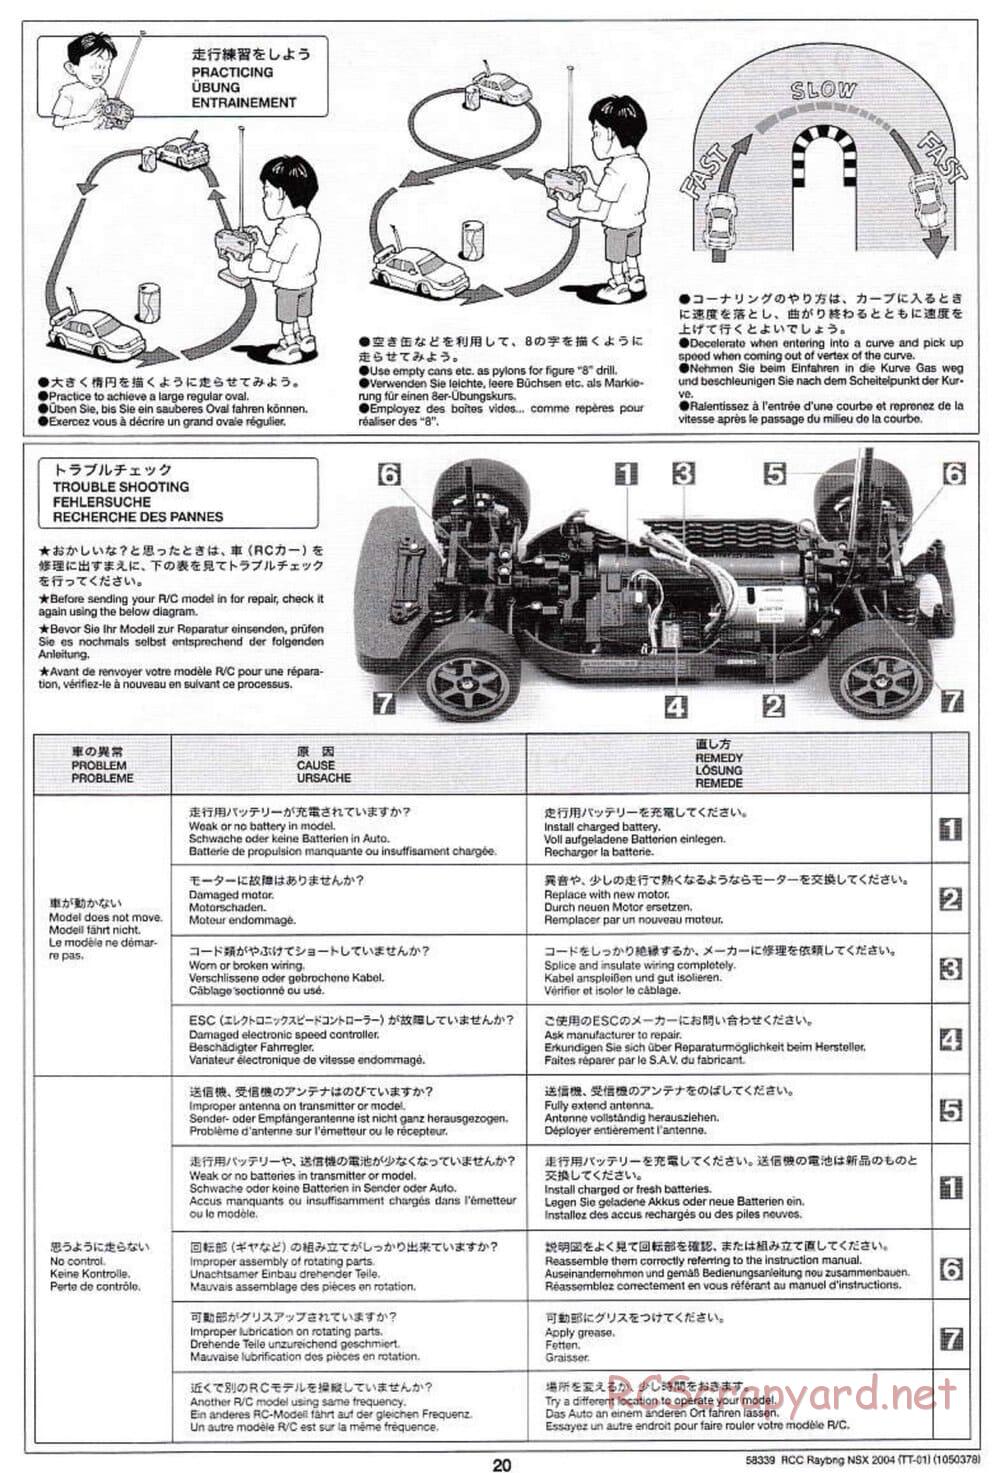 Tamiya - Raybrig NSX 2004 Chassis - Manual - Page 20